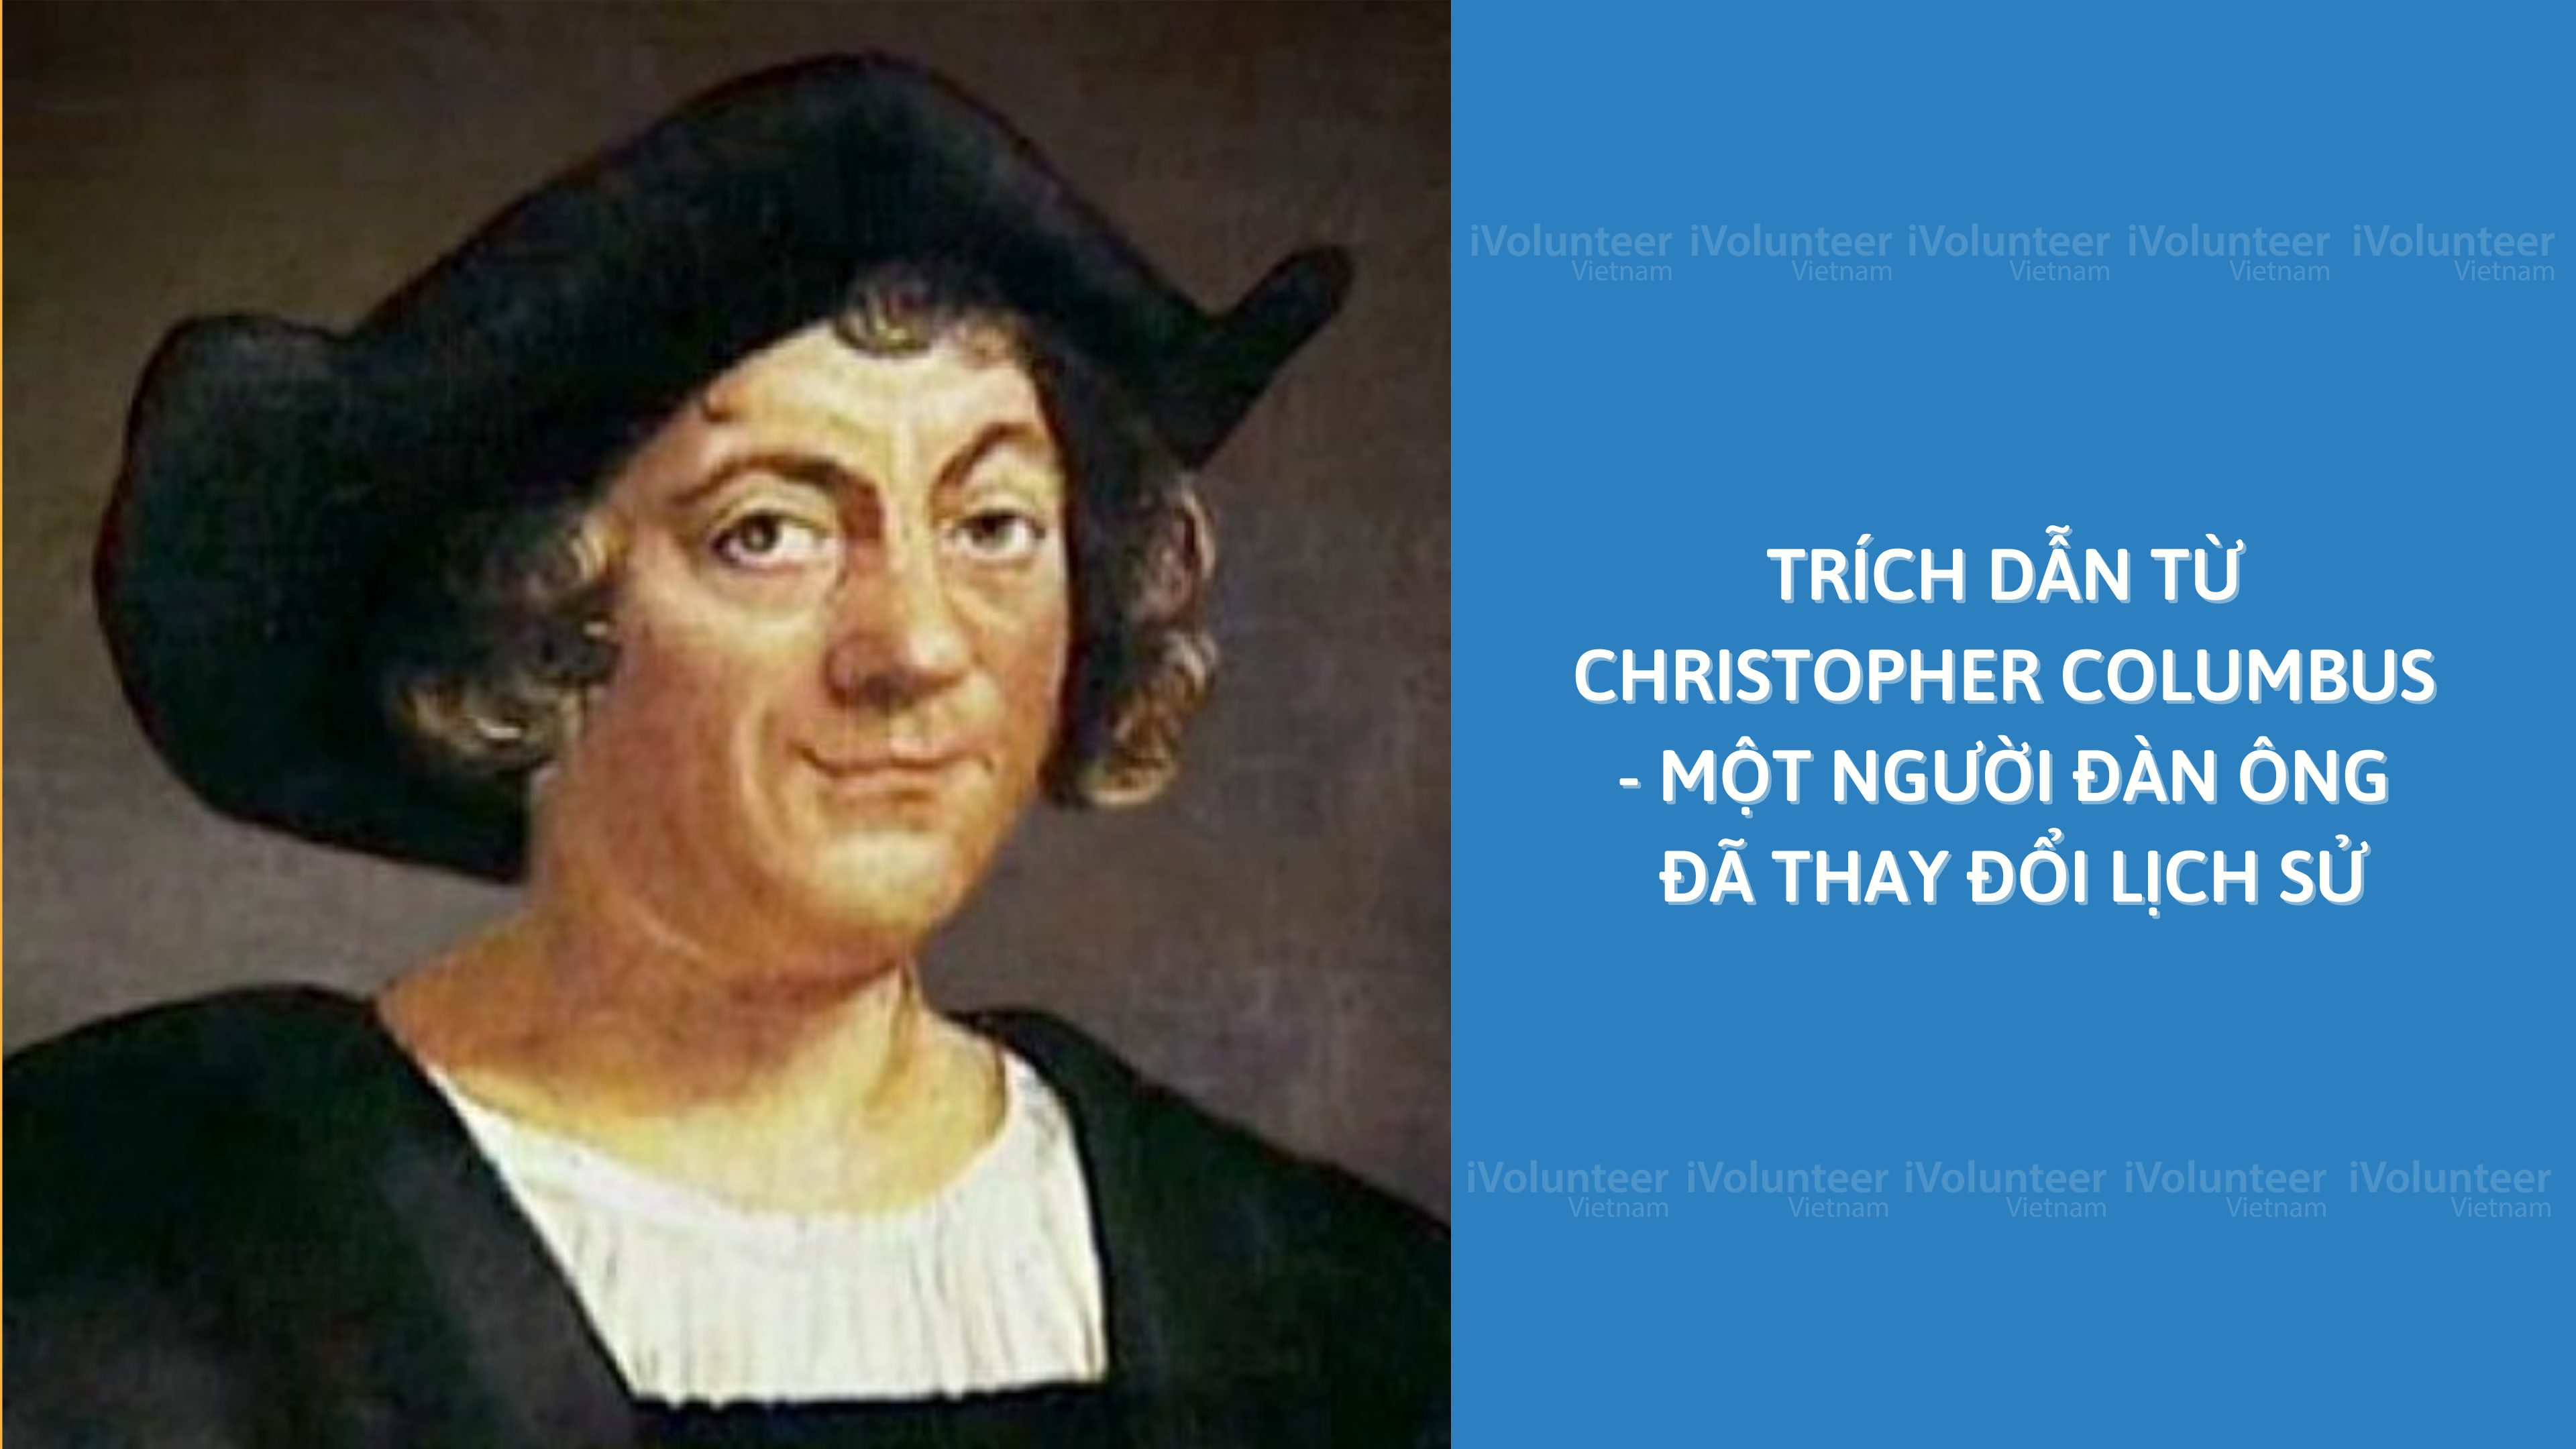 Trích Dẫn Từ Christopher Columbus - Một Người Đàn Ông Đã Thay Đổi Lịch Sử